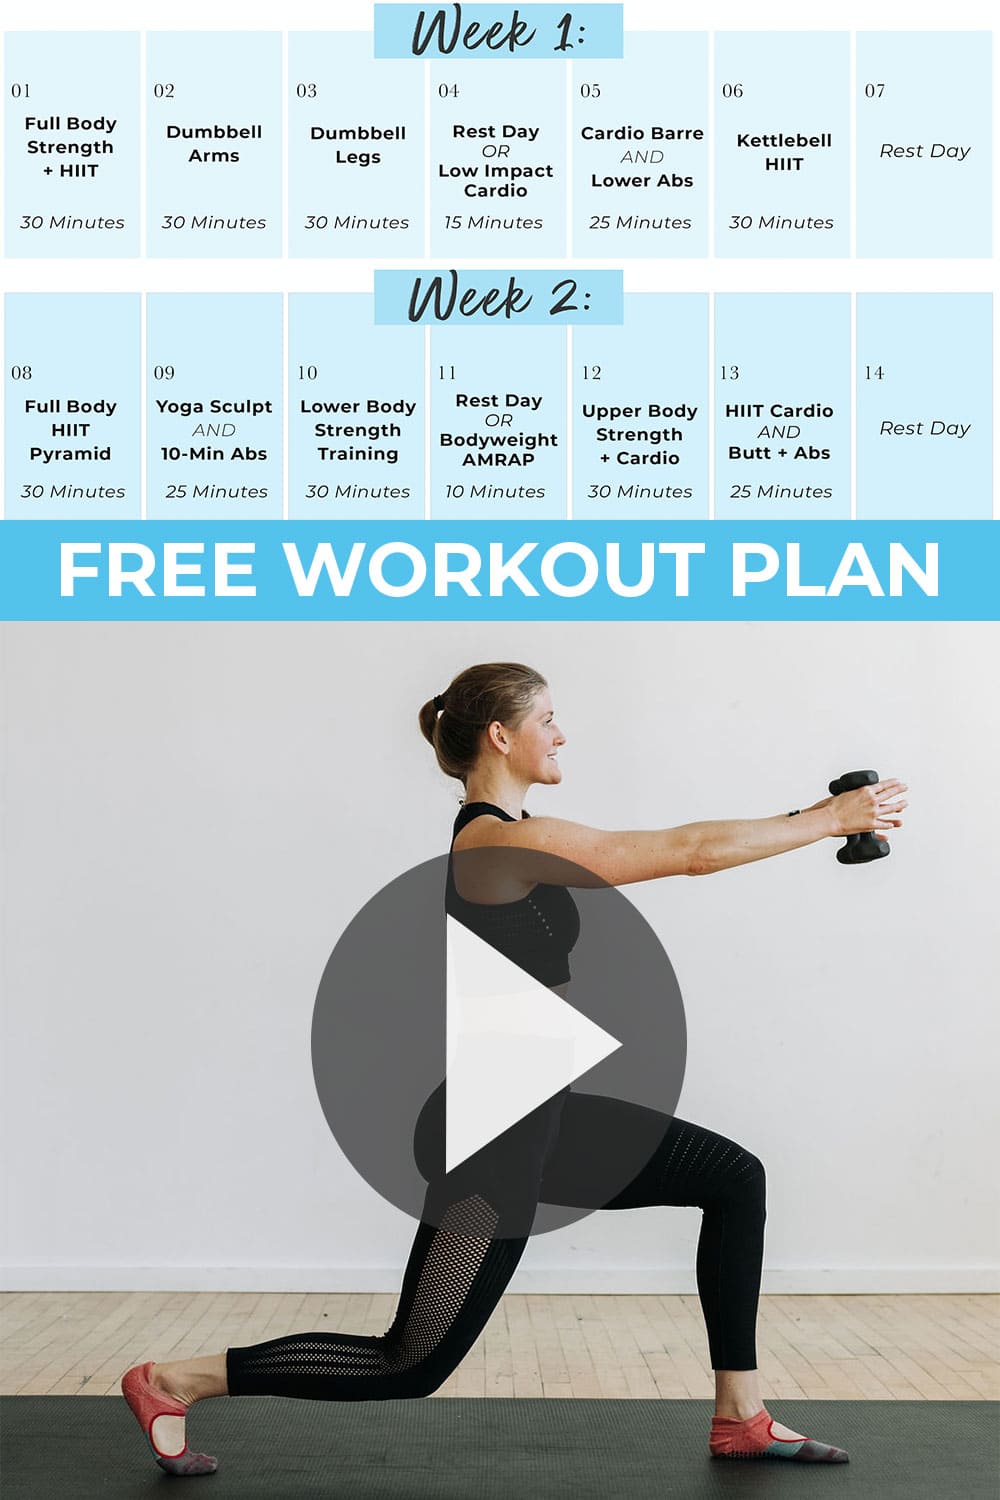 Free 14-Day Workout Plan (PDF) | Nourish Move Love